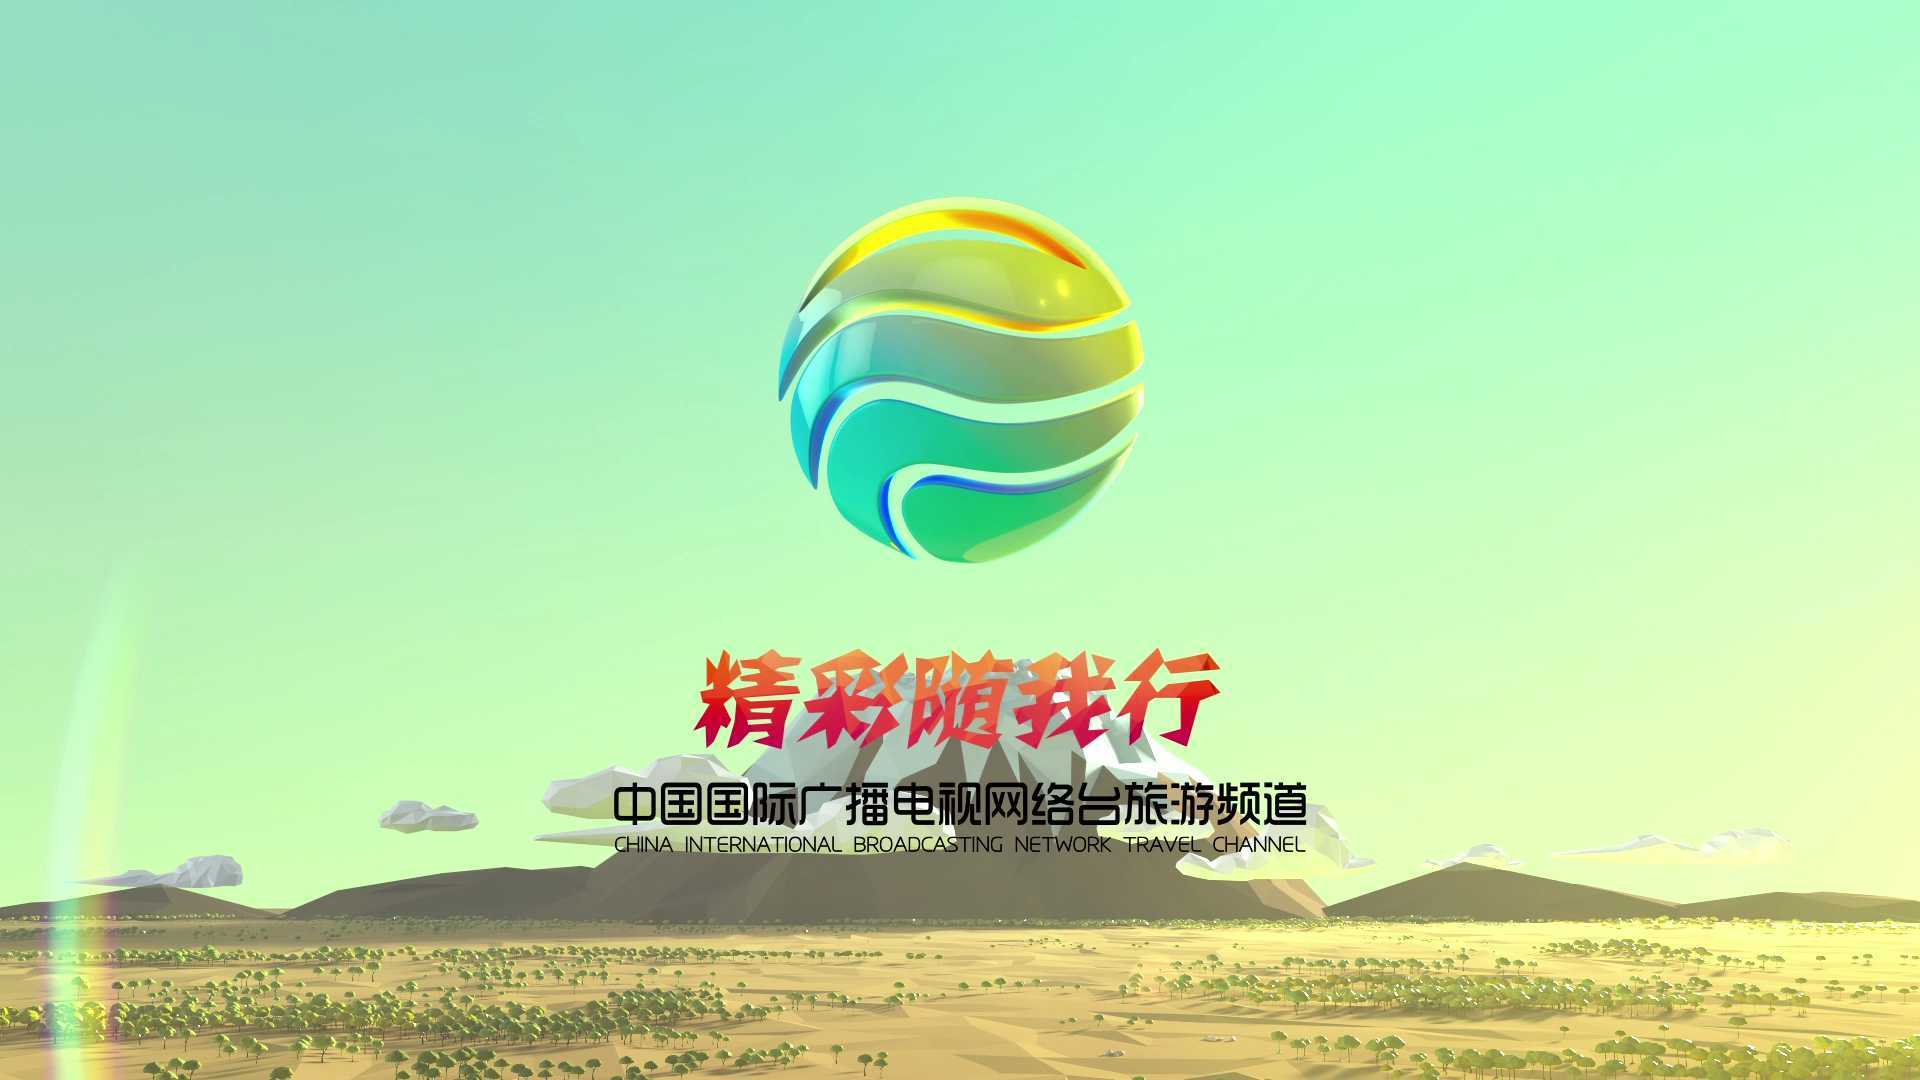 中国国际广播电台旅游频道包装片头